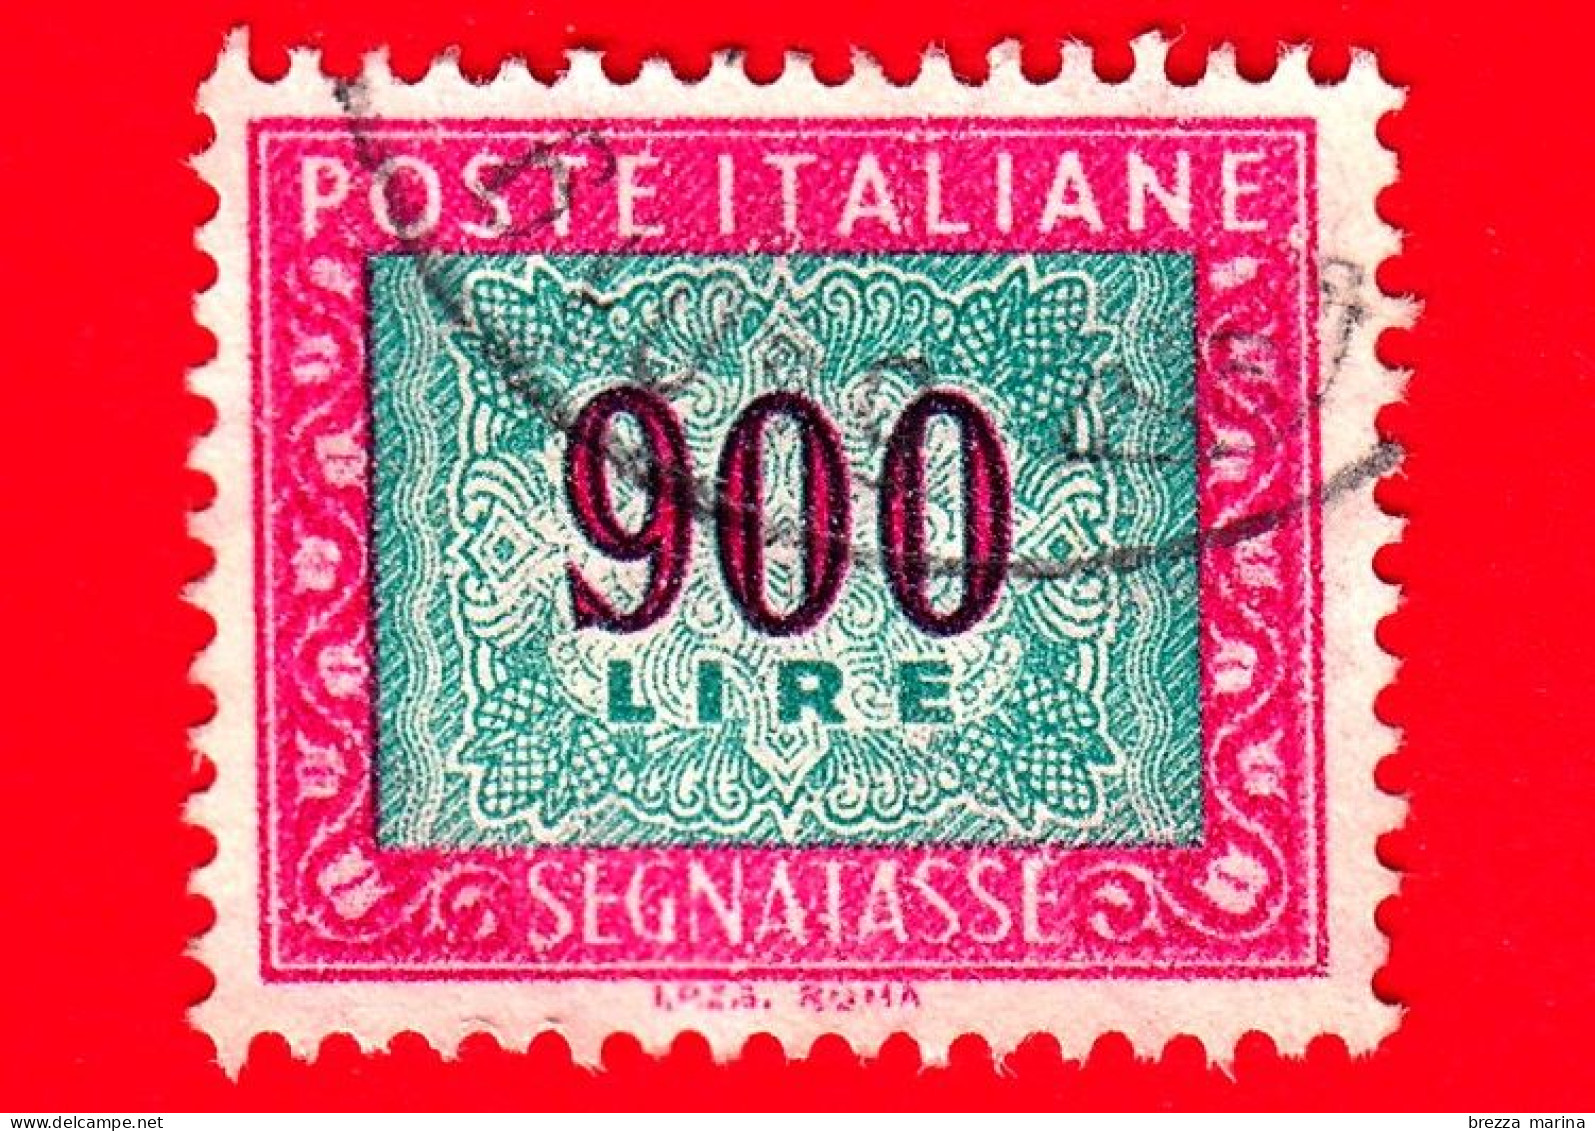 ITALIA - Usato - 1984 - Segnatasse - Cifra E Decorazioni, Filigrana Stelle, Dicitura I.P.Z.S. ROMA  - 900 L. - Portomarken